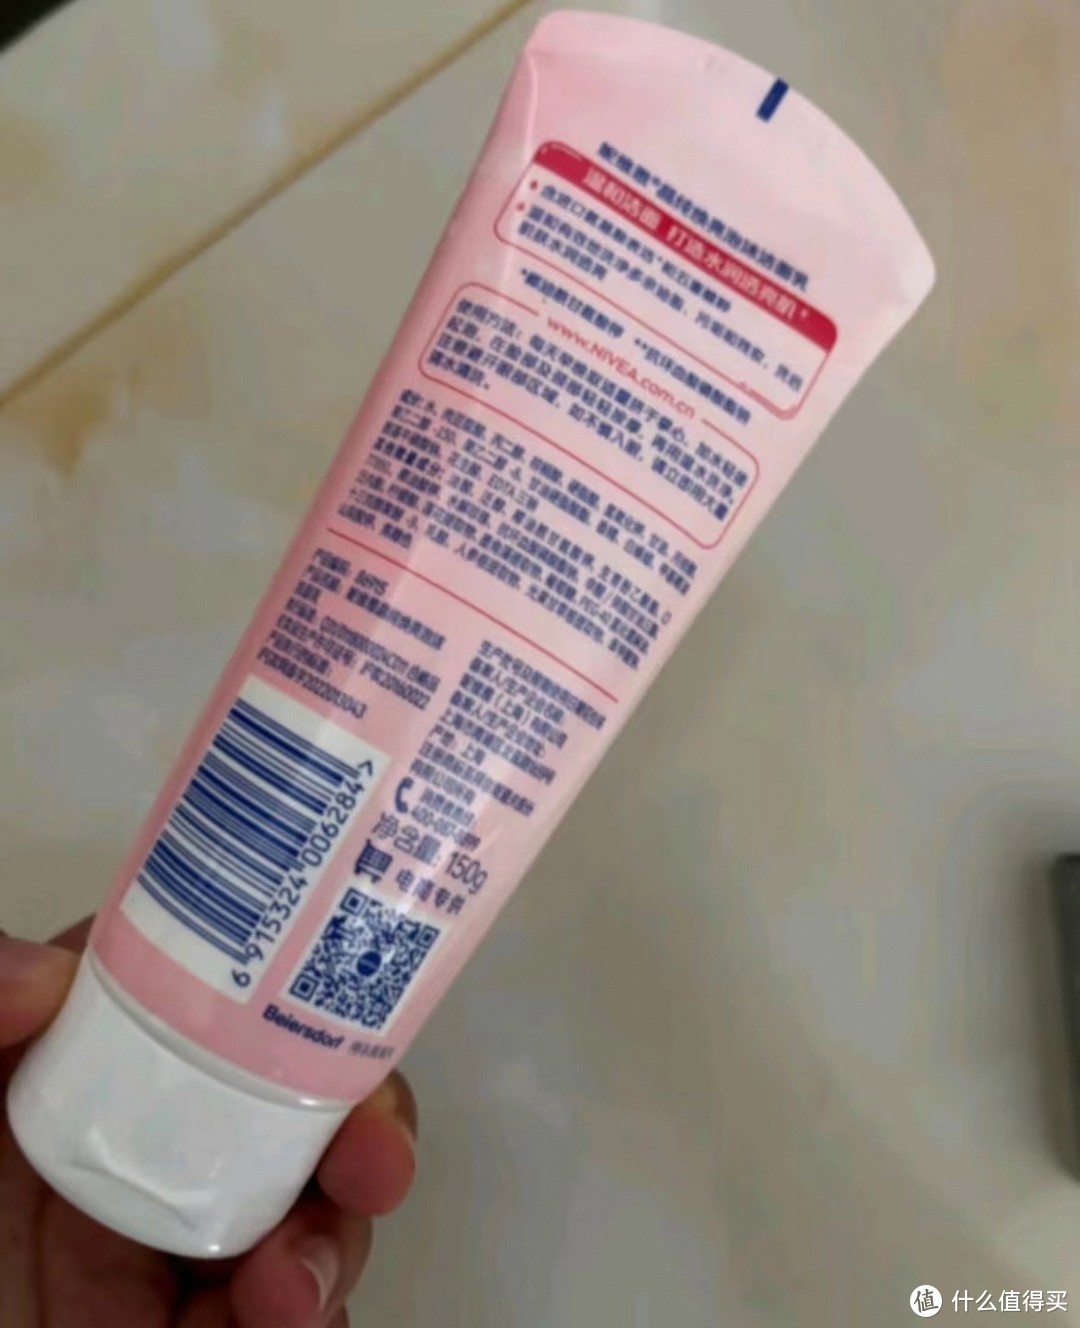 如果你也是油性肌肤的朋友，不妨试试这款洗面奶吧！相信你一定会爱上它的。